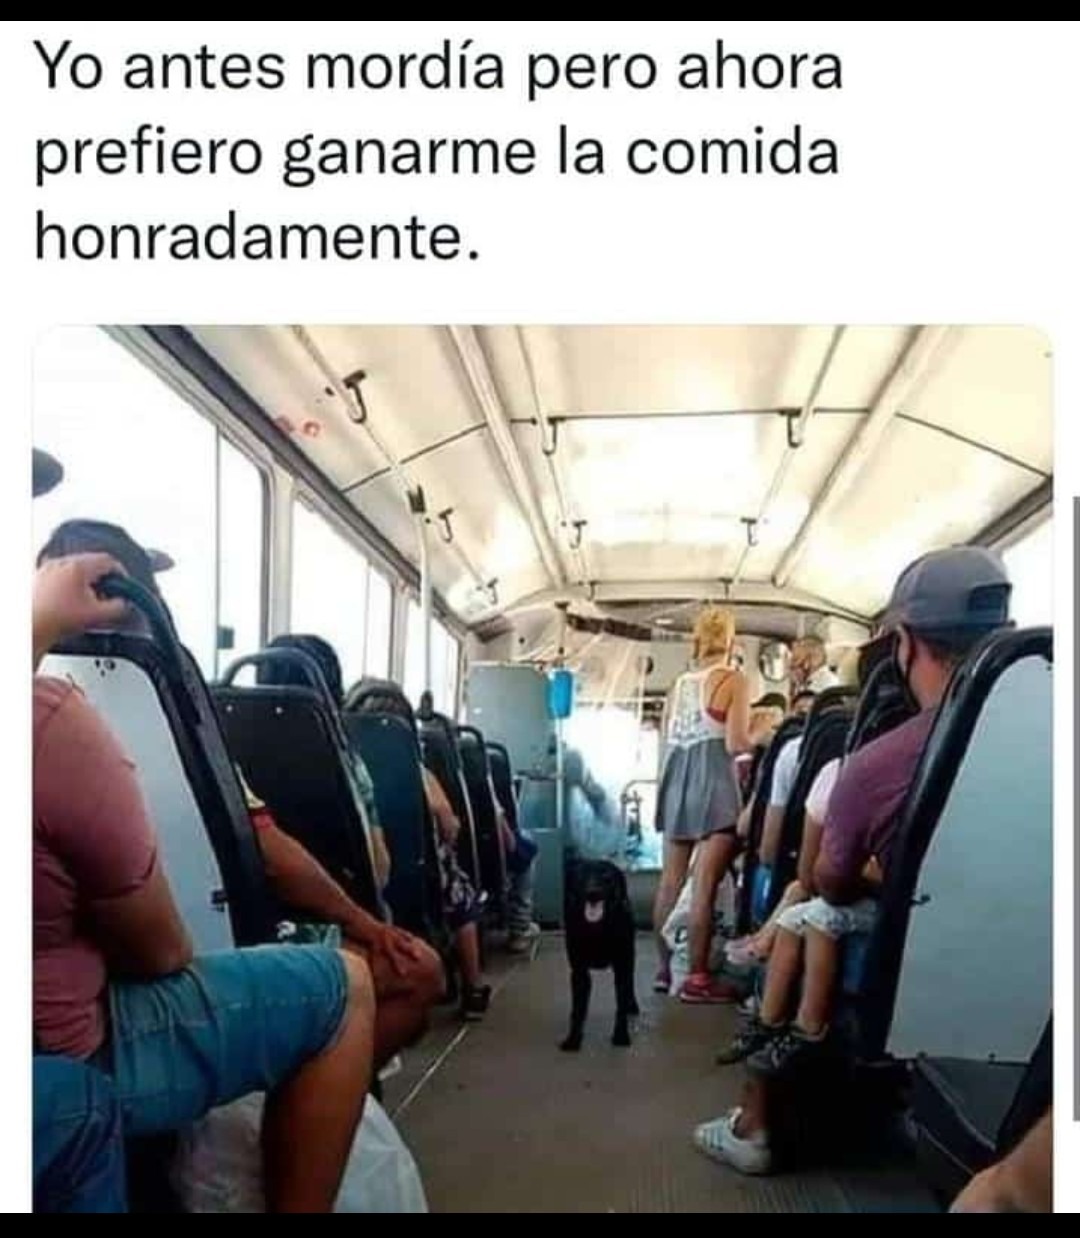 Transporte público en México - meme